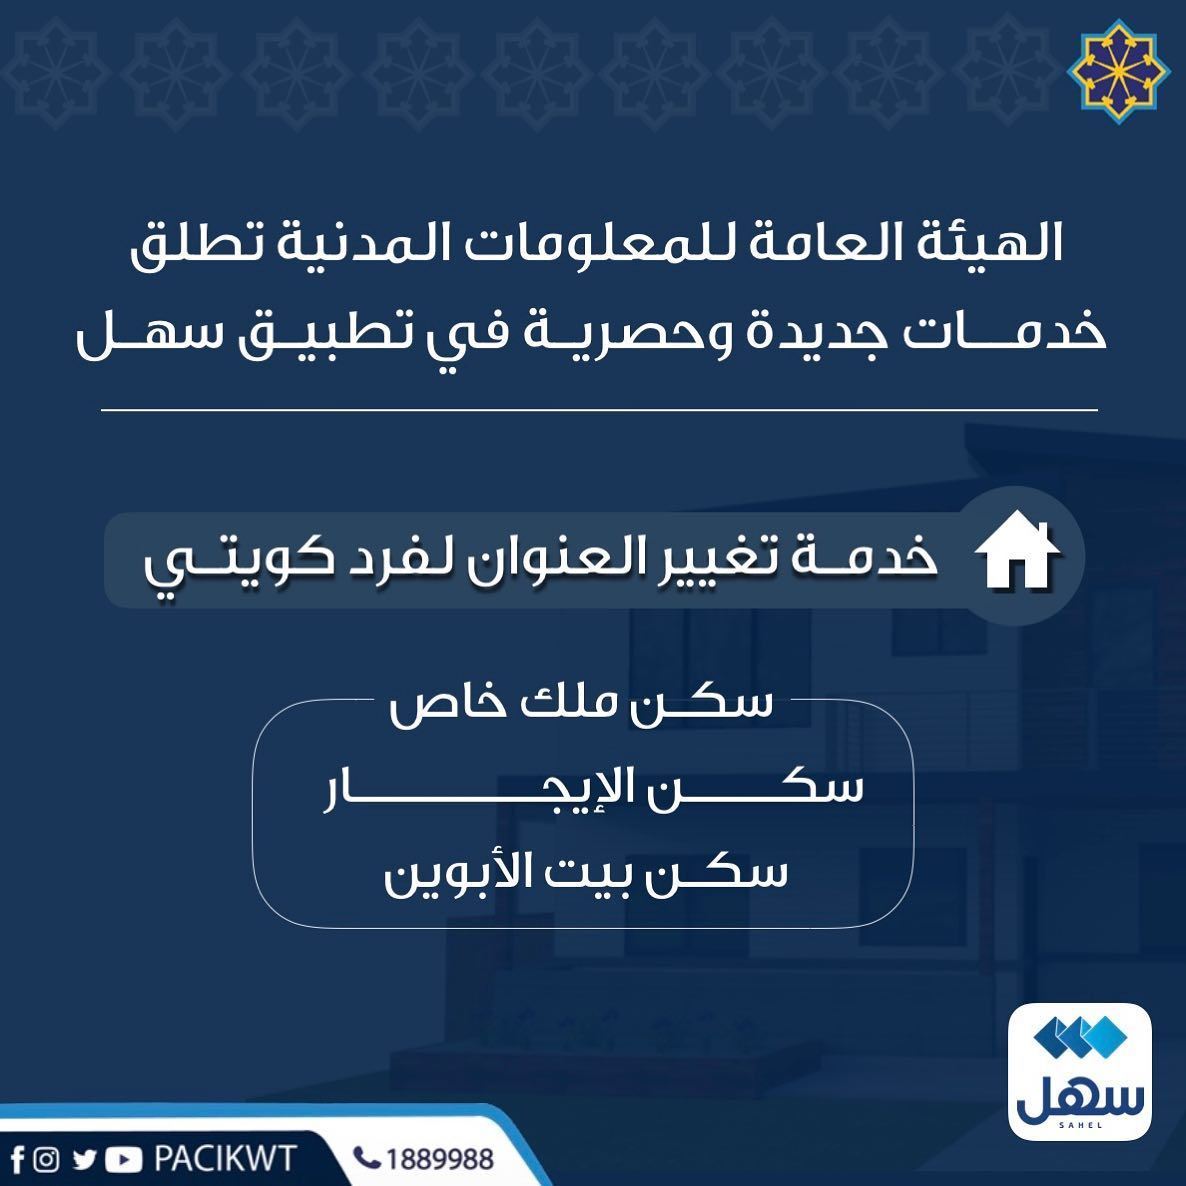 الهيئة العامة للمعلومات المدنية تطلق خدمة تغيير عنوان السكن للفرد الكويتي